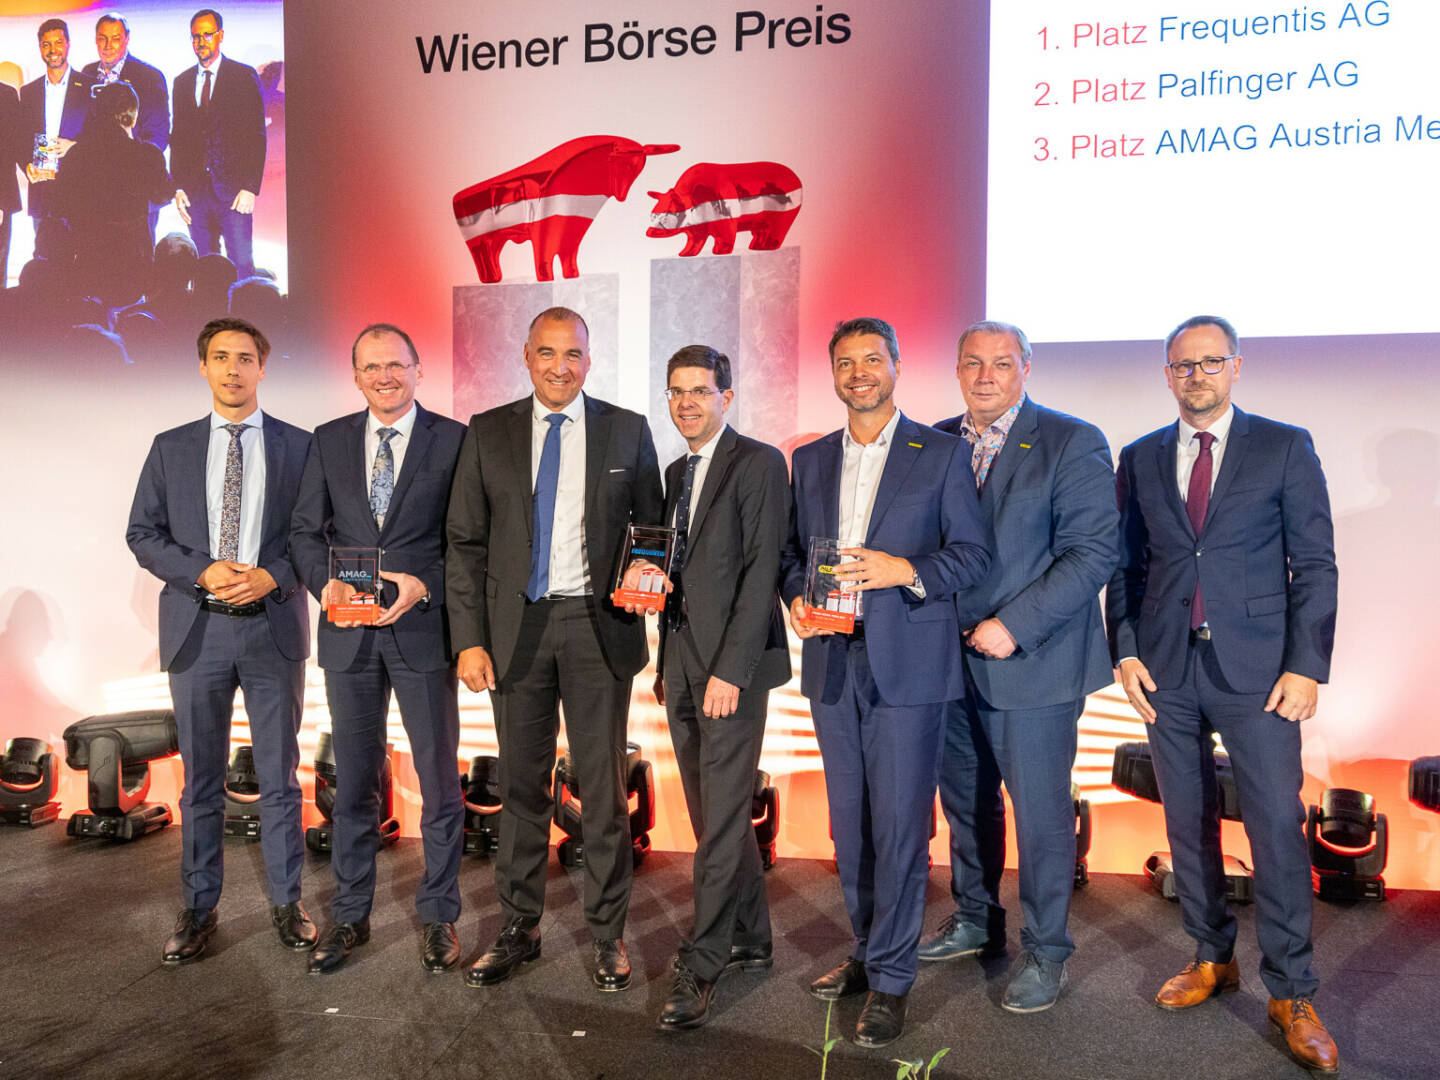 Wiener Börse Preis 2022 - Mid Cap-Preis: Gabriel, Mayer (AMAG), Haslacher, Marin (Frequentis), Strohbichler, Roither (Palfinger), Maxian (ÖVFA), Credit: Wiener Börse